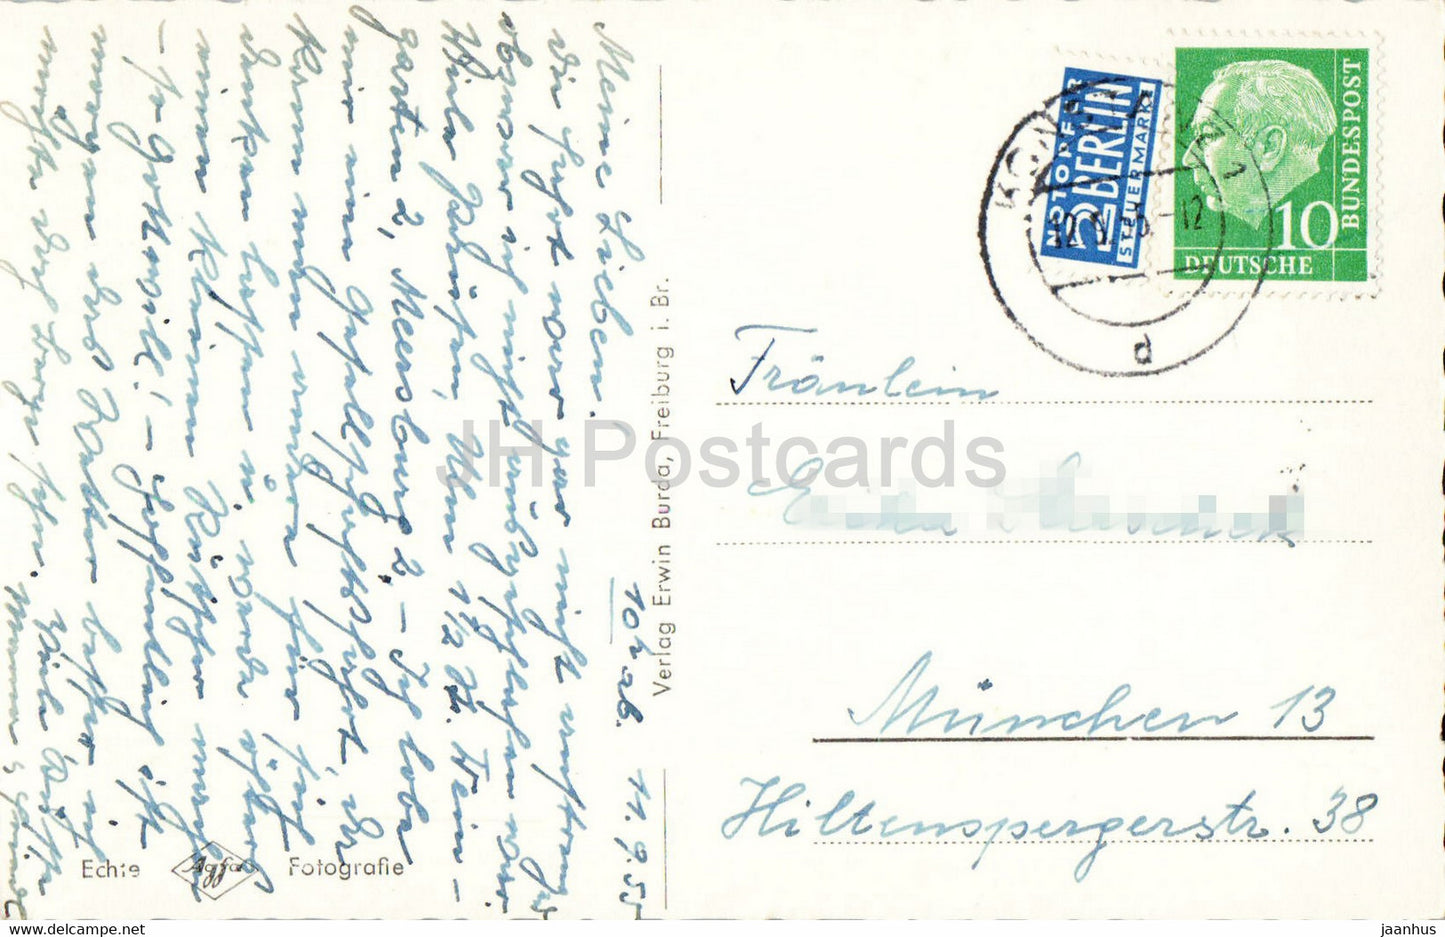 Constance - Rheinbrucke - pont - carte postale ancienne - 1955 - Allemagne - utilisé